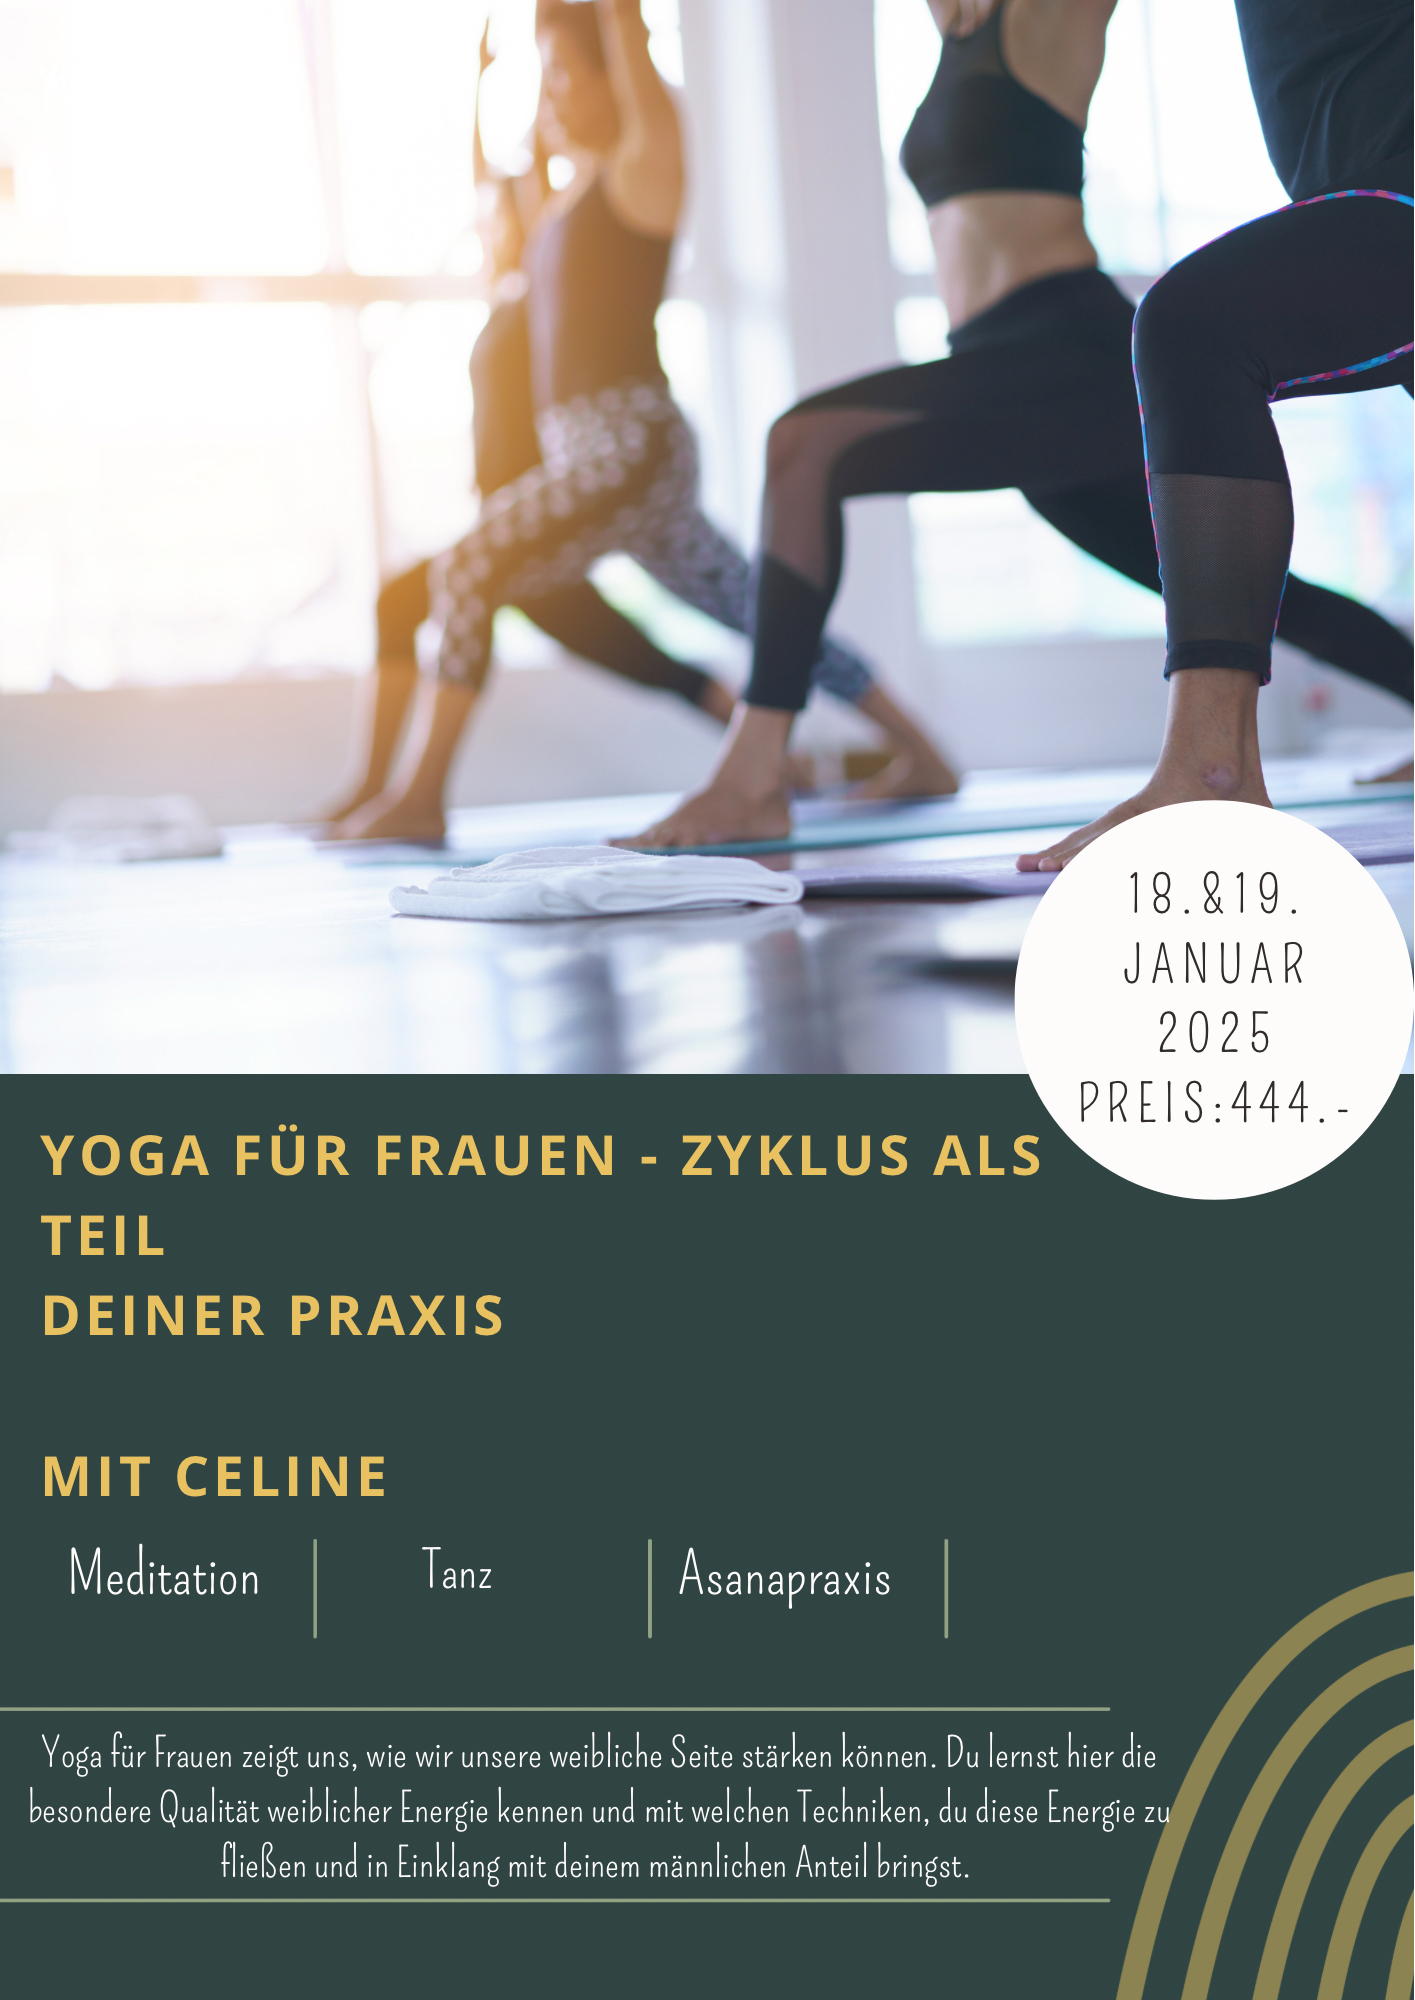 Yoga für Frauen - Zyklus als Teil deiner Praxis mit Celine